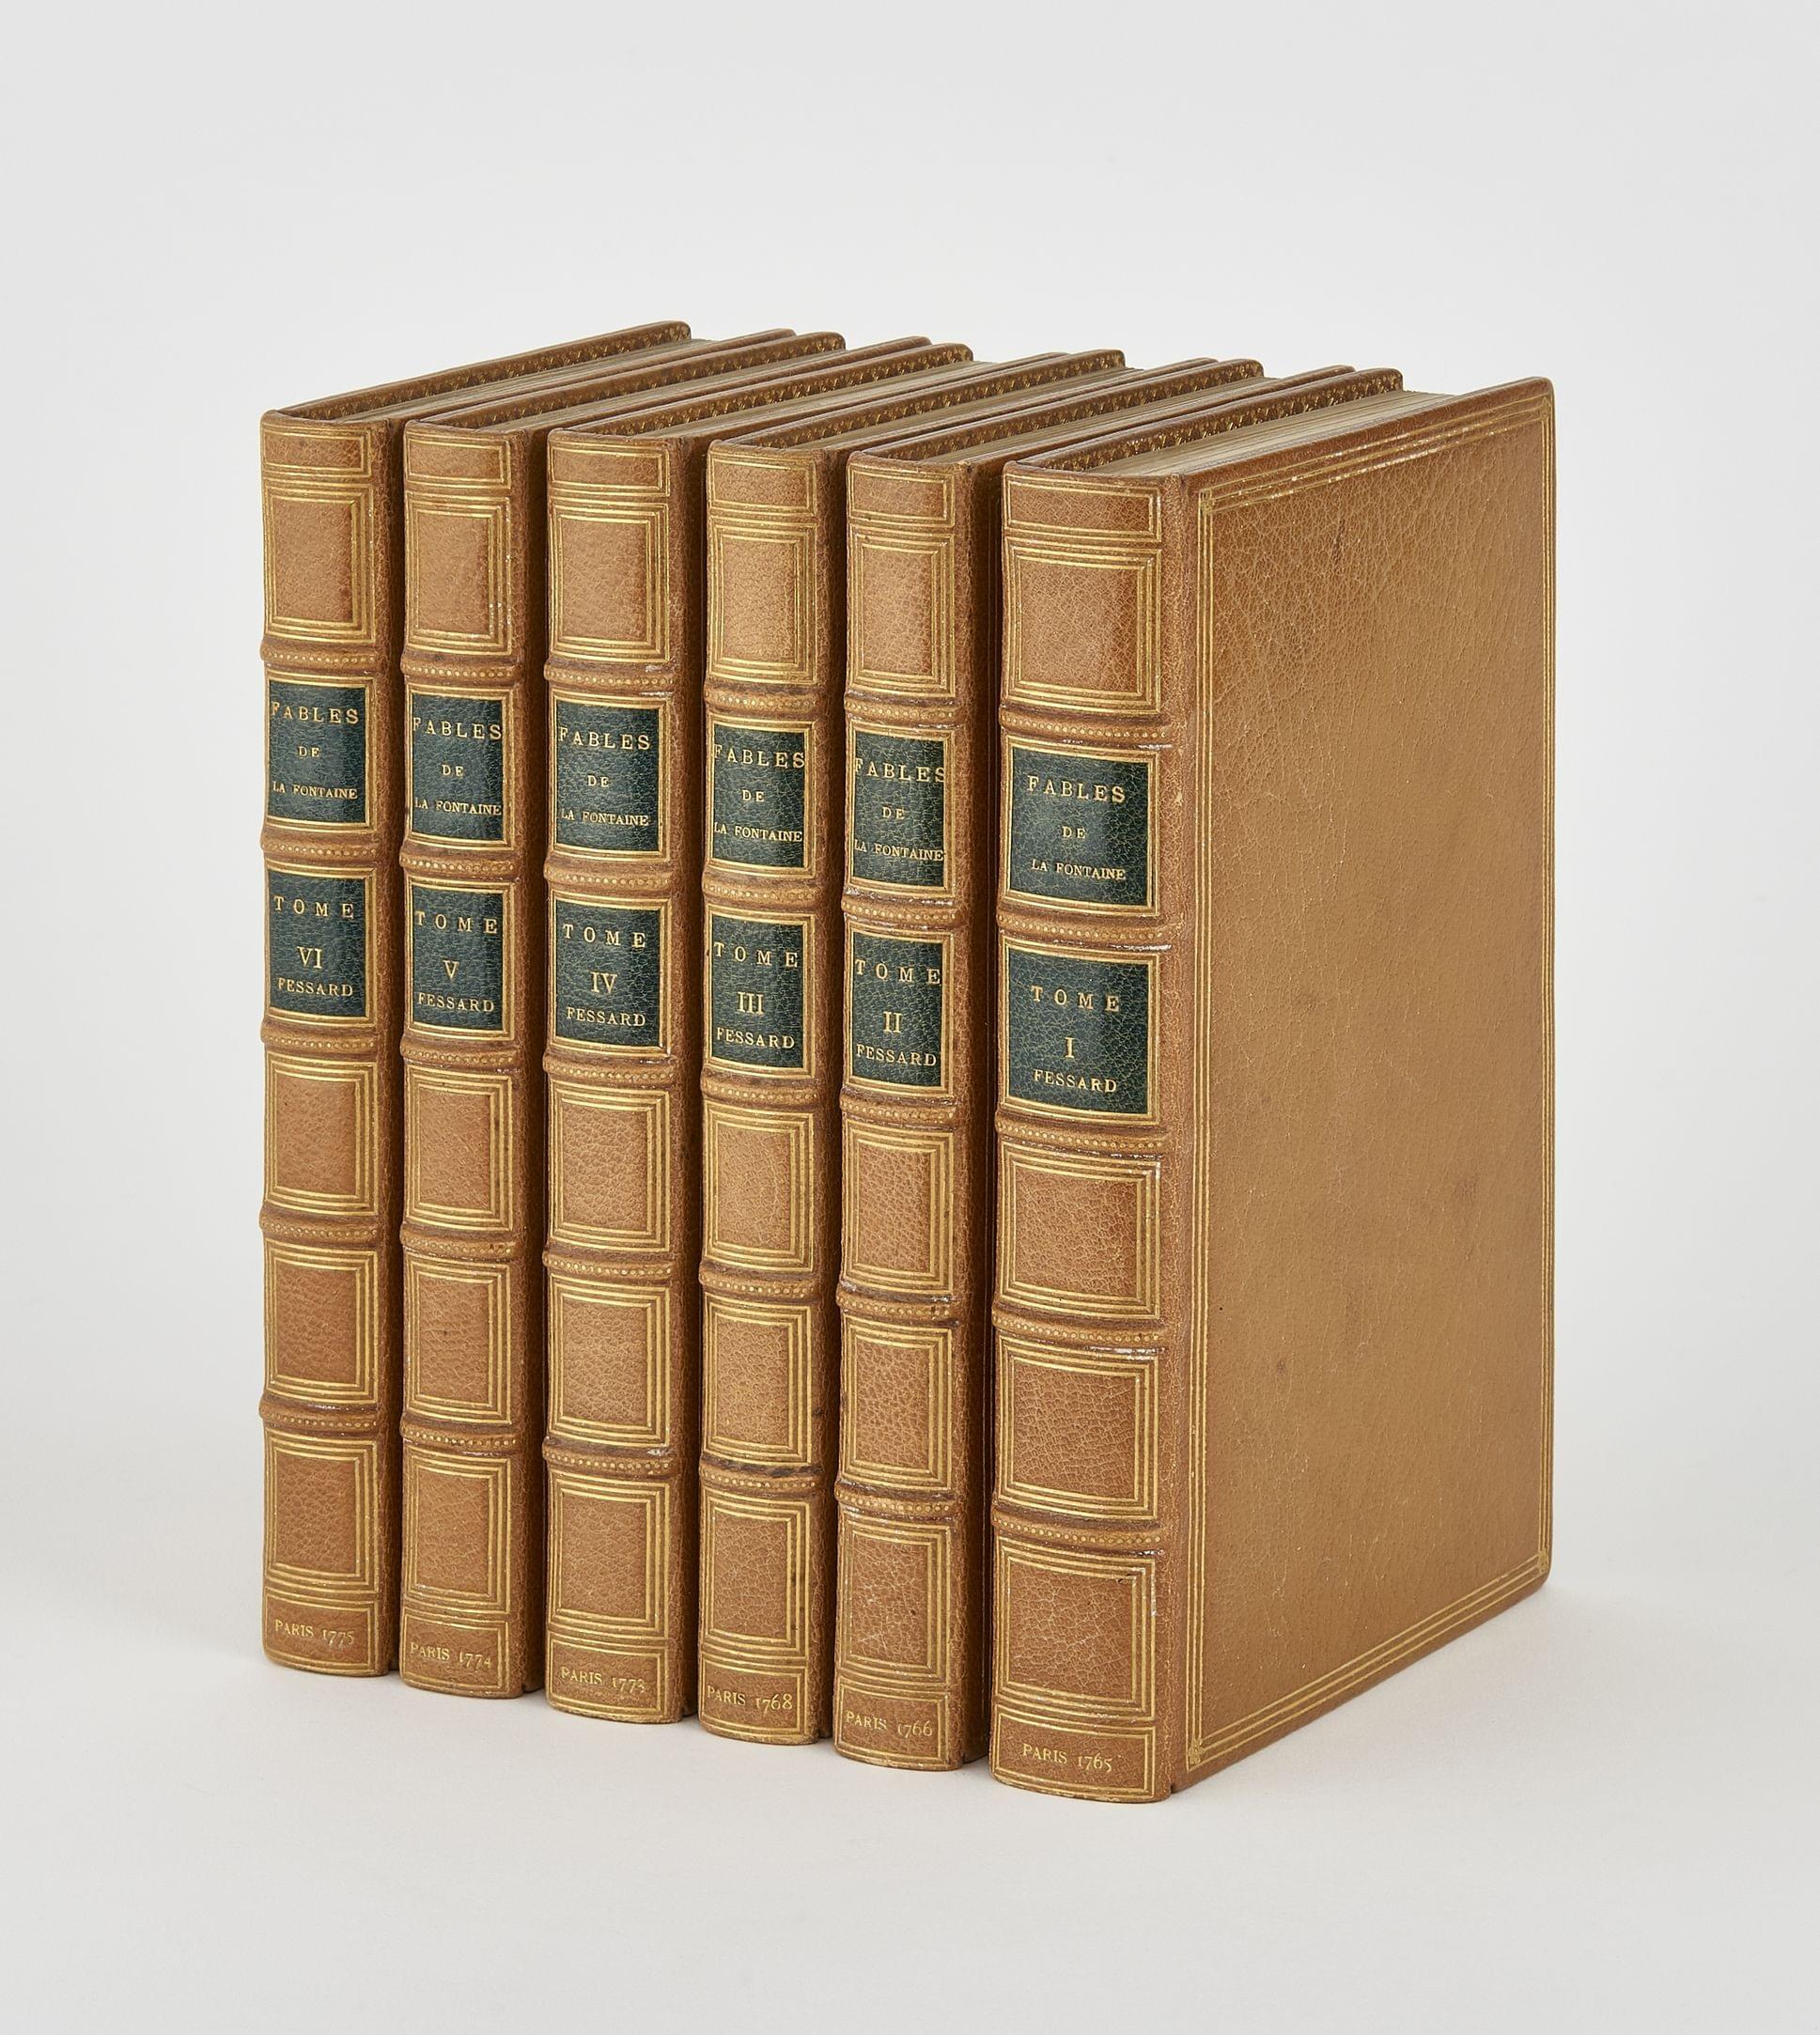 LA FONTAINE: Fables Choisies, Mises en vers. Paris, chez L'Auteur, 1767-1775, Paris, 1765-1775; 